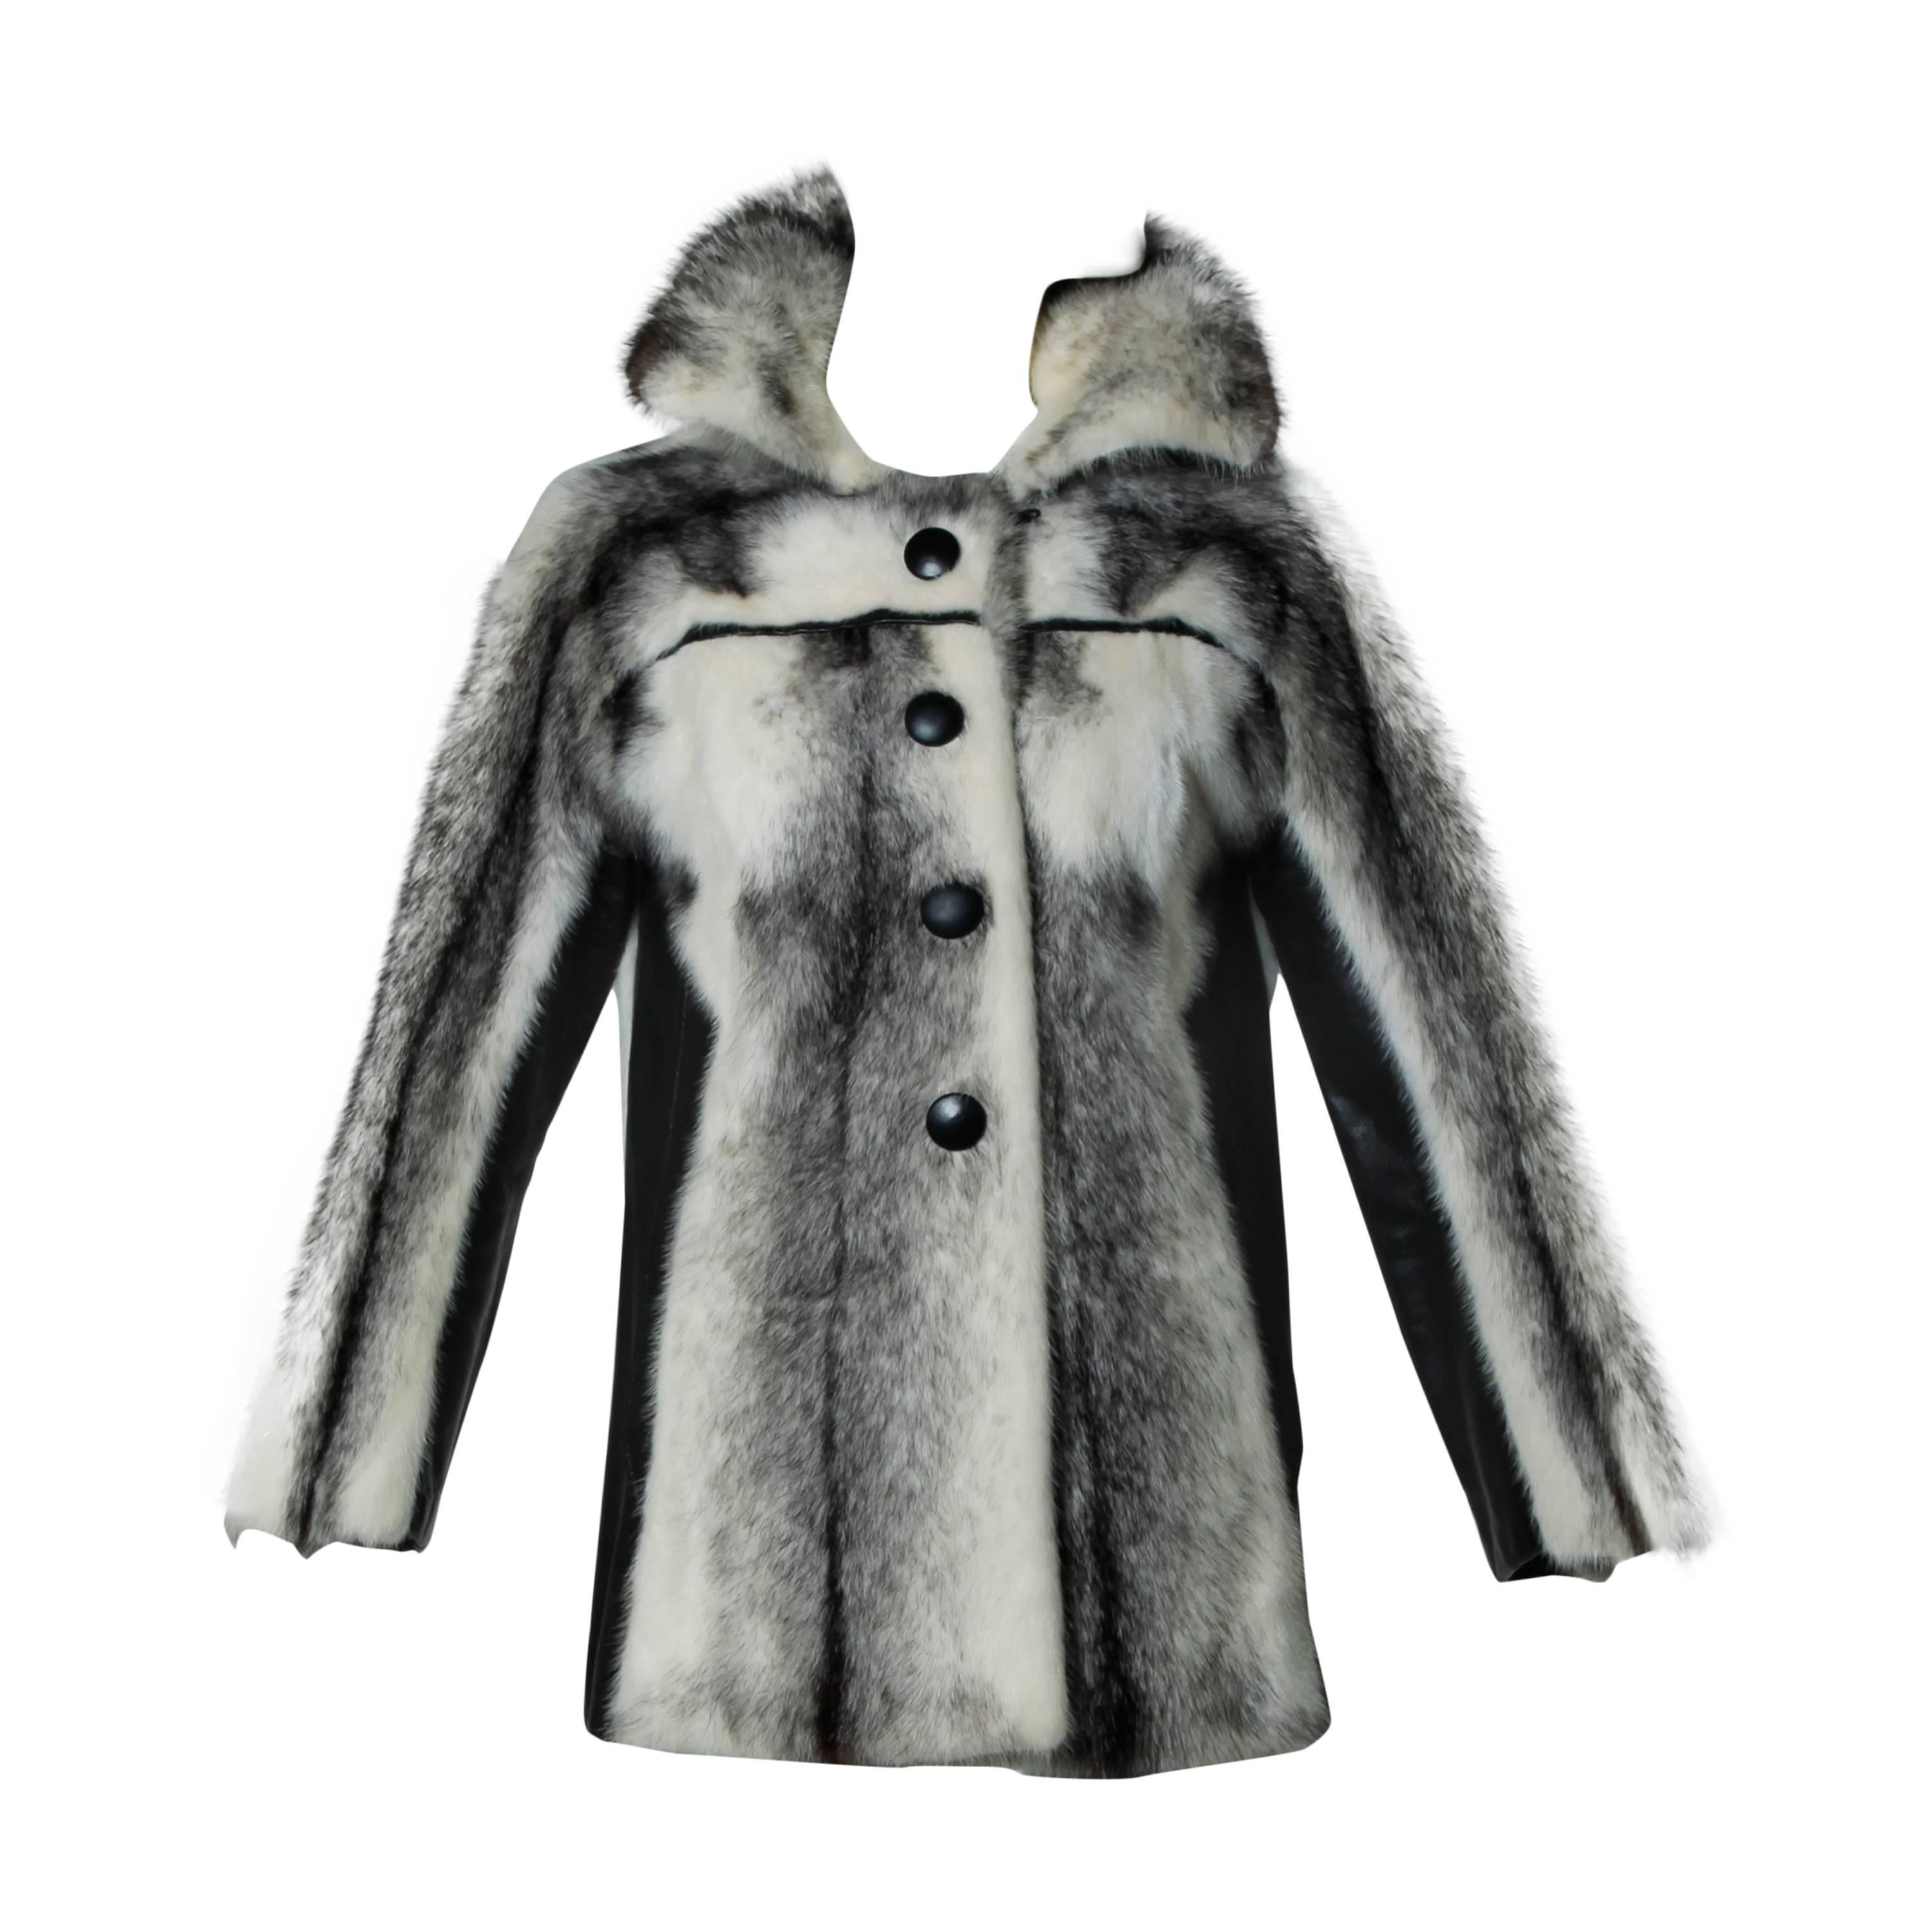 Black + White Vintage Cross Mink Fur + Leather Coat or Jacket